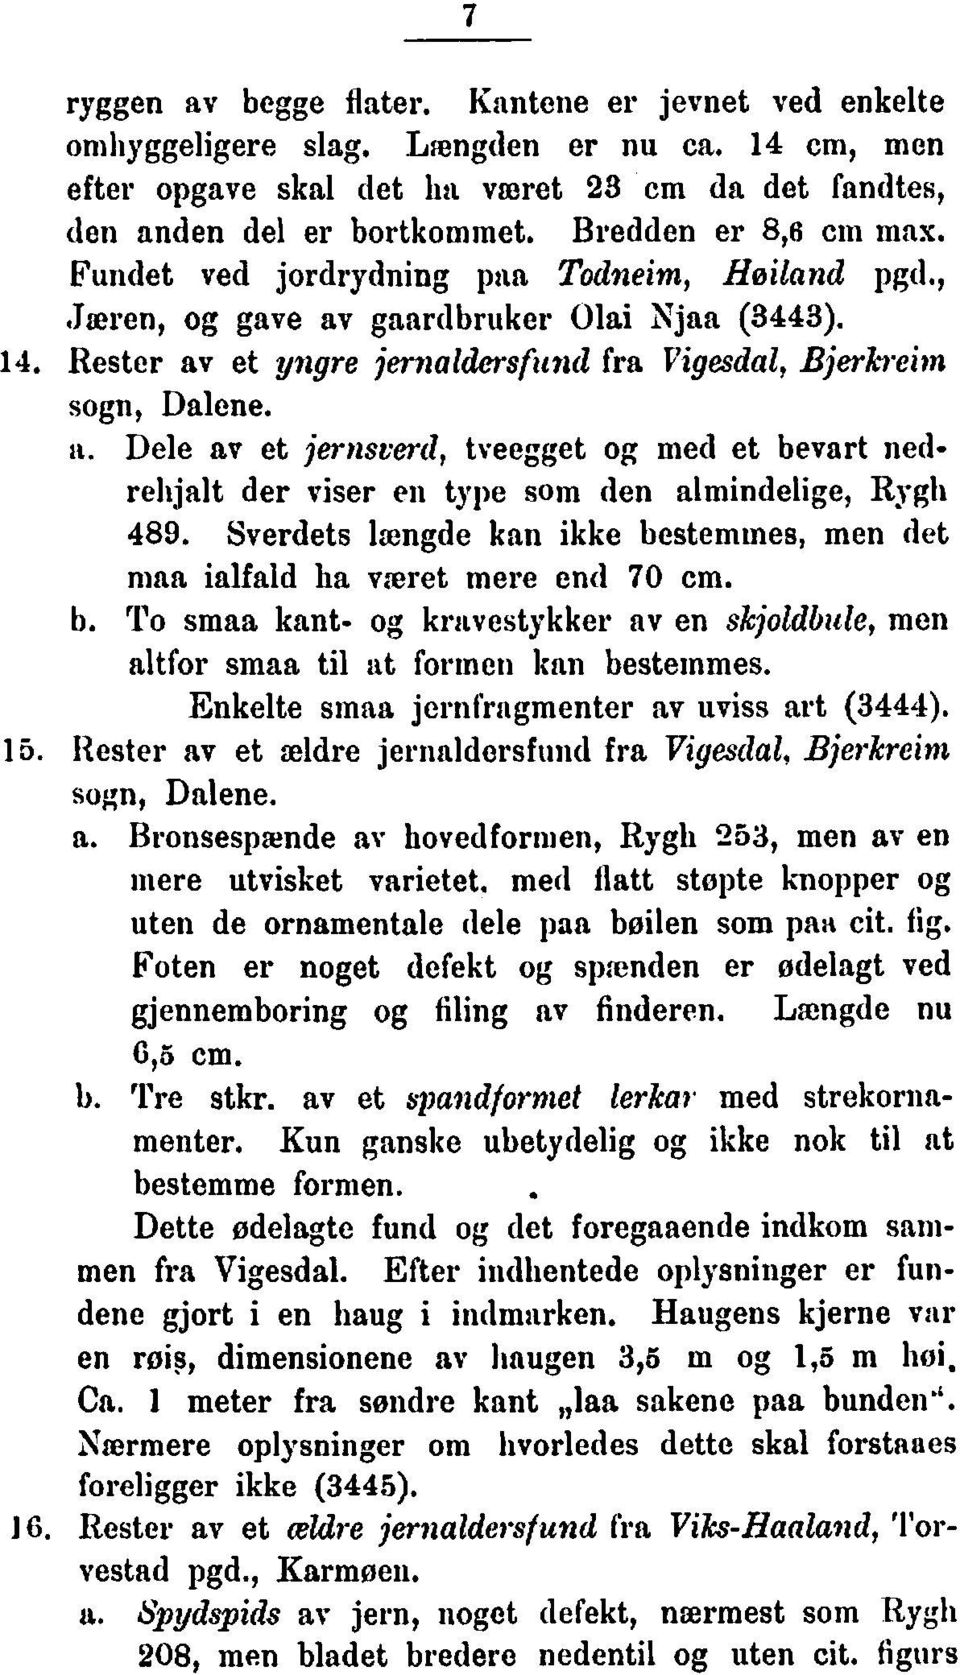 Rester av et yngre jeri~aldmsfitil(1 fra Vigesdal, Bjerkreim sogn, Dalene. ti. Dele av et jernscer(1, tveegget og med et bevart nedrehjalt der viser ei1 type som den almindelige, Rygh 489.